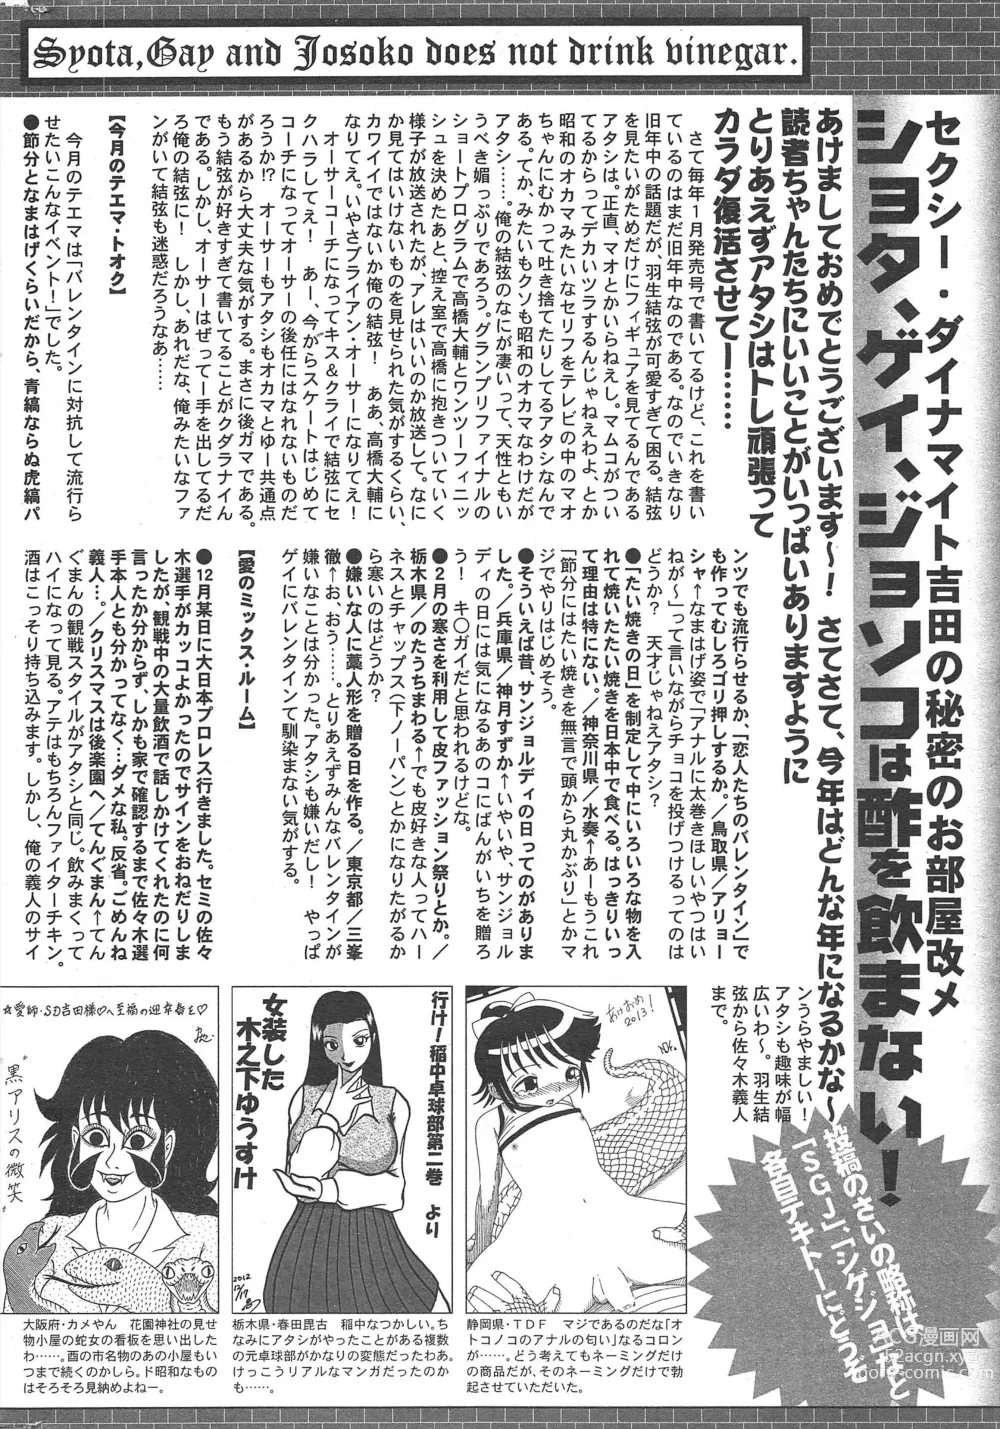 Page 322 of manga Manga Bangaichi 2013-03